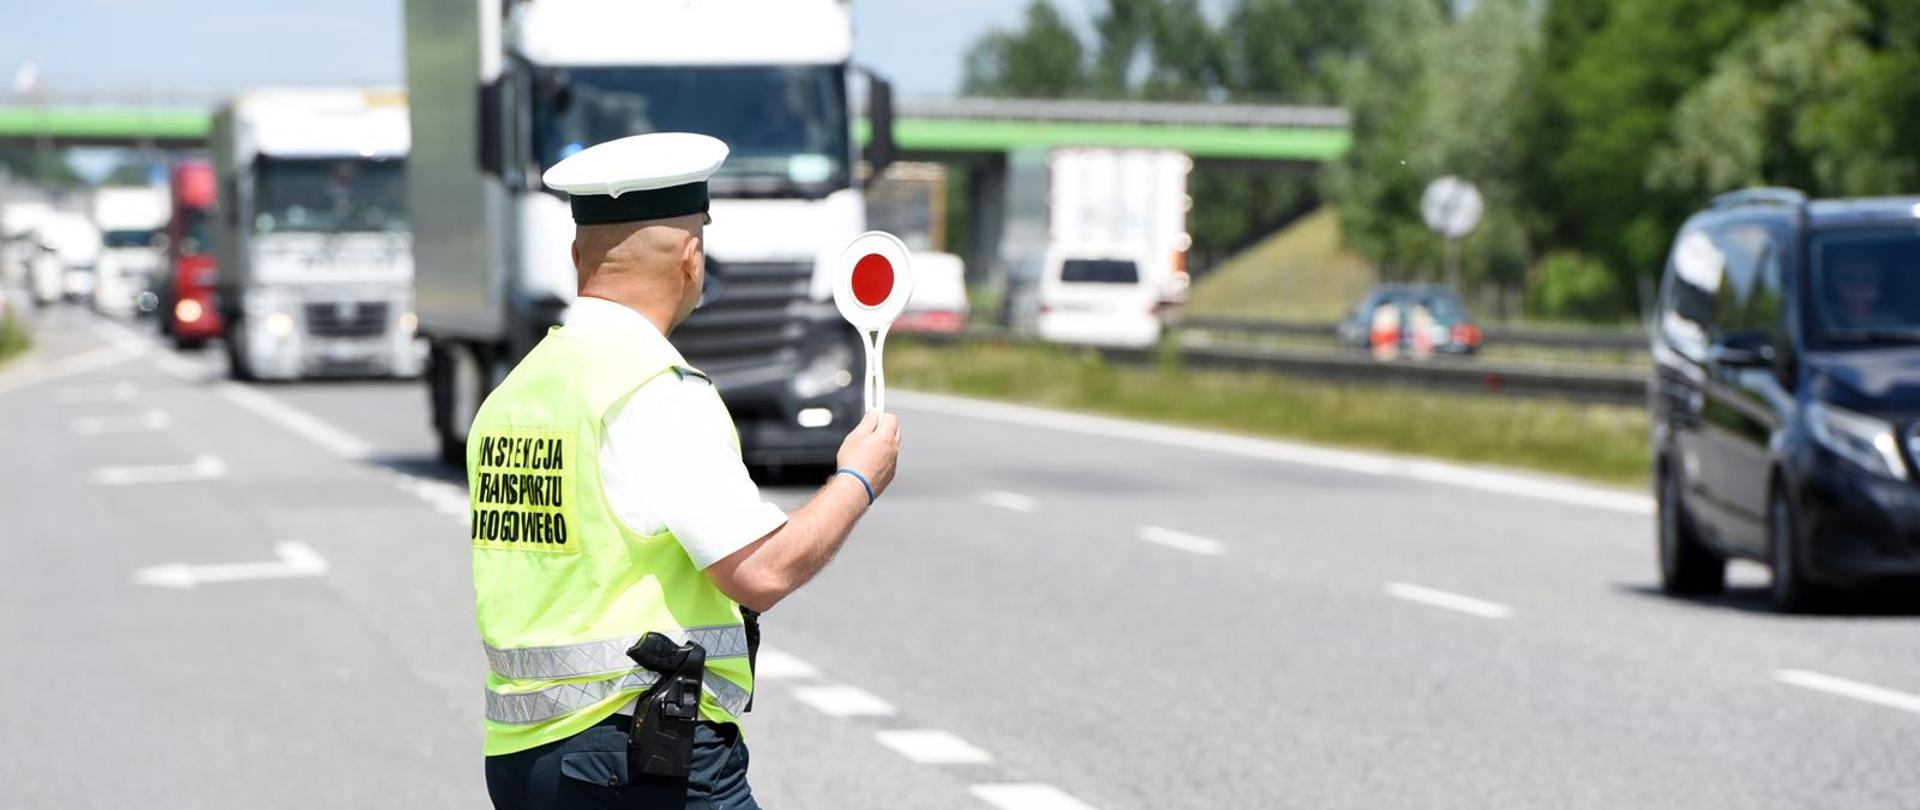 Inspektor Inspekcji Transportu Drogowego przy dwupasmowej drodze, z tarczą do zatrzymywania pojazdów w ręku. Sygnalizuje kierowcy ciężarówki zatrzymanie do kontroli. W tle pojazdy ciężarowe jadące drogą.